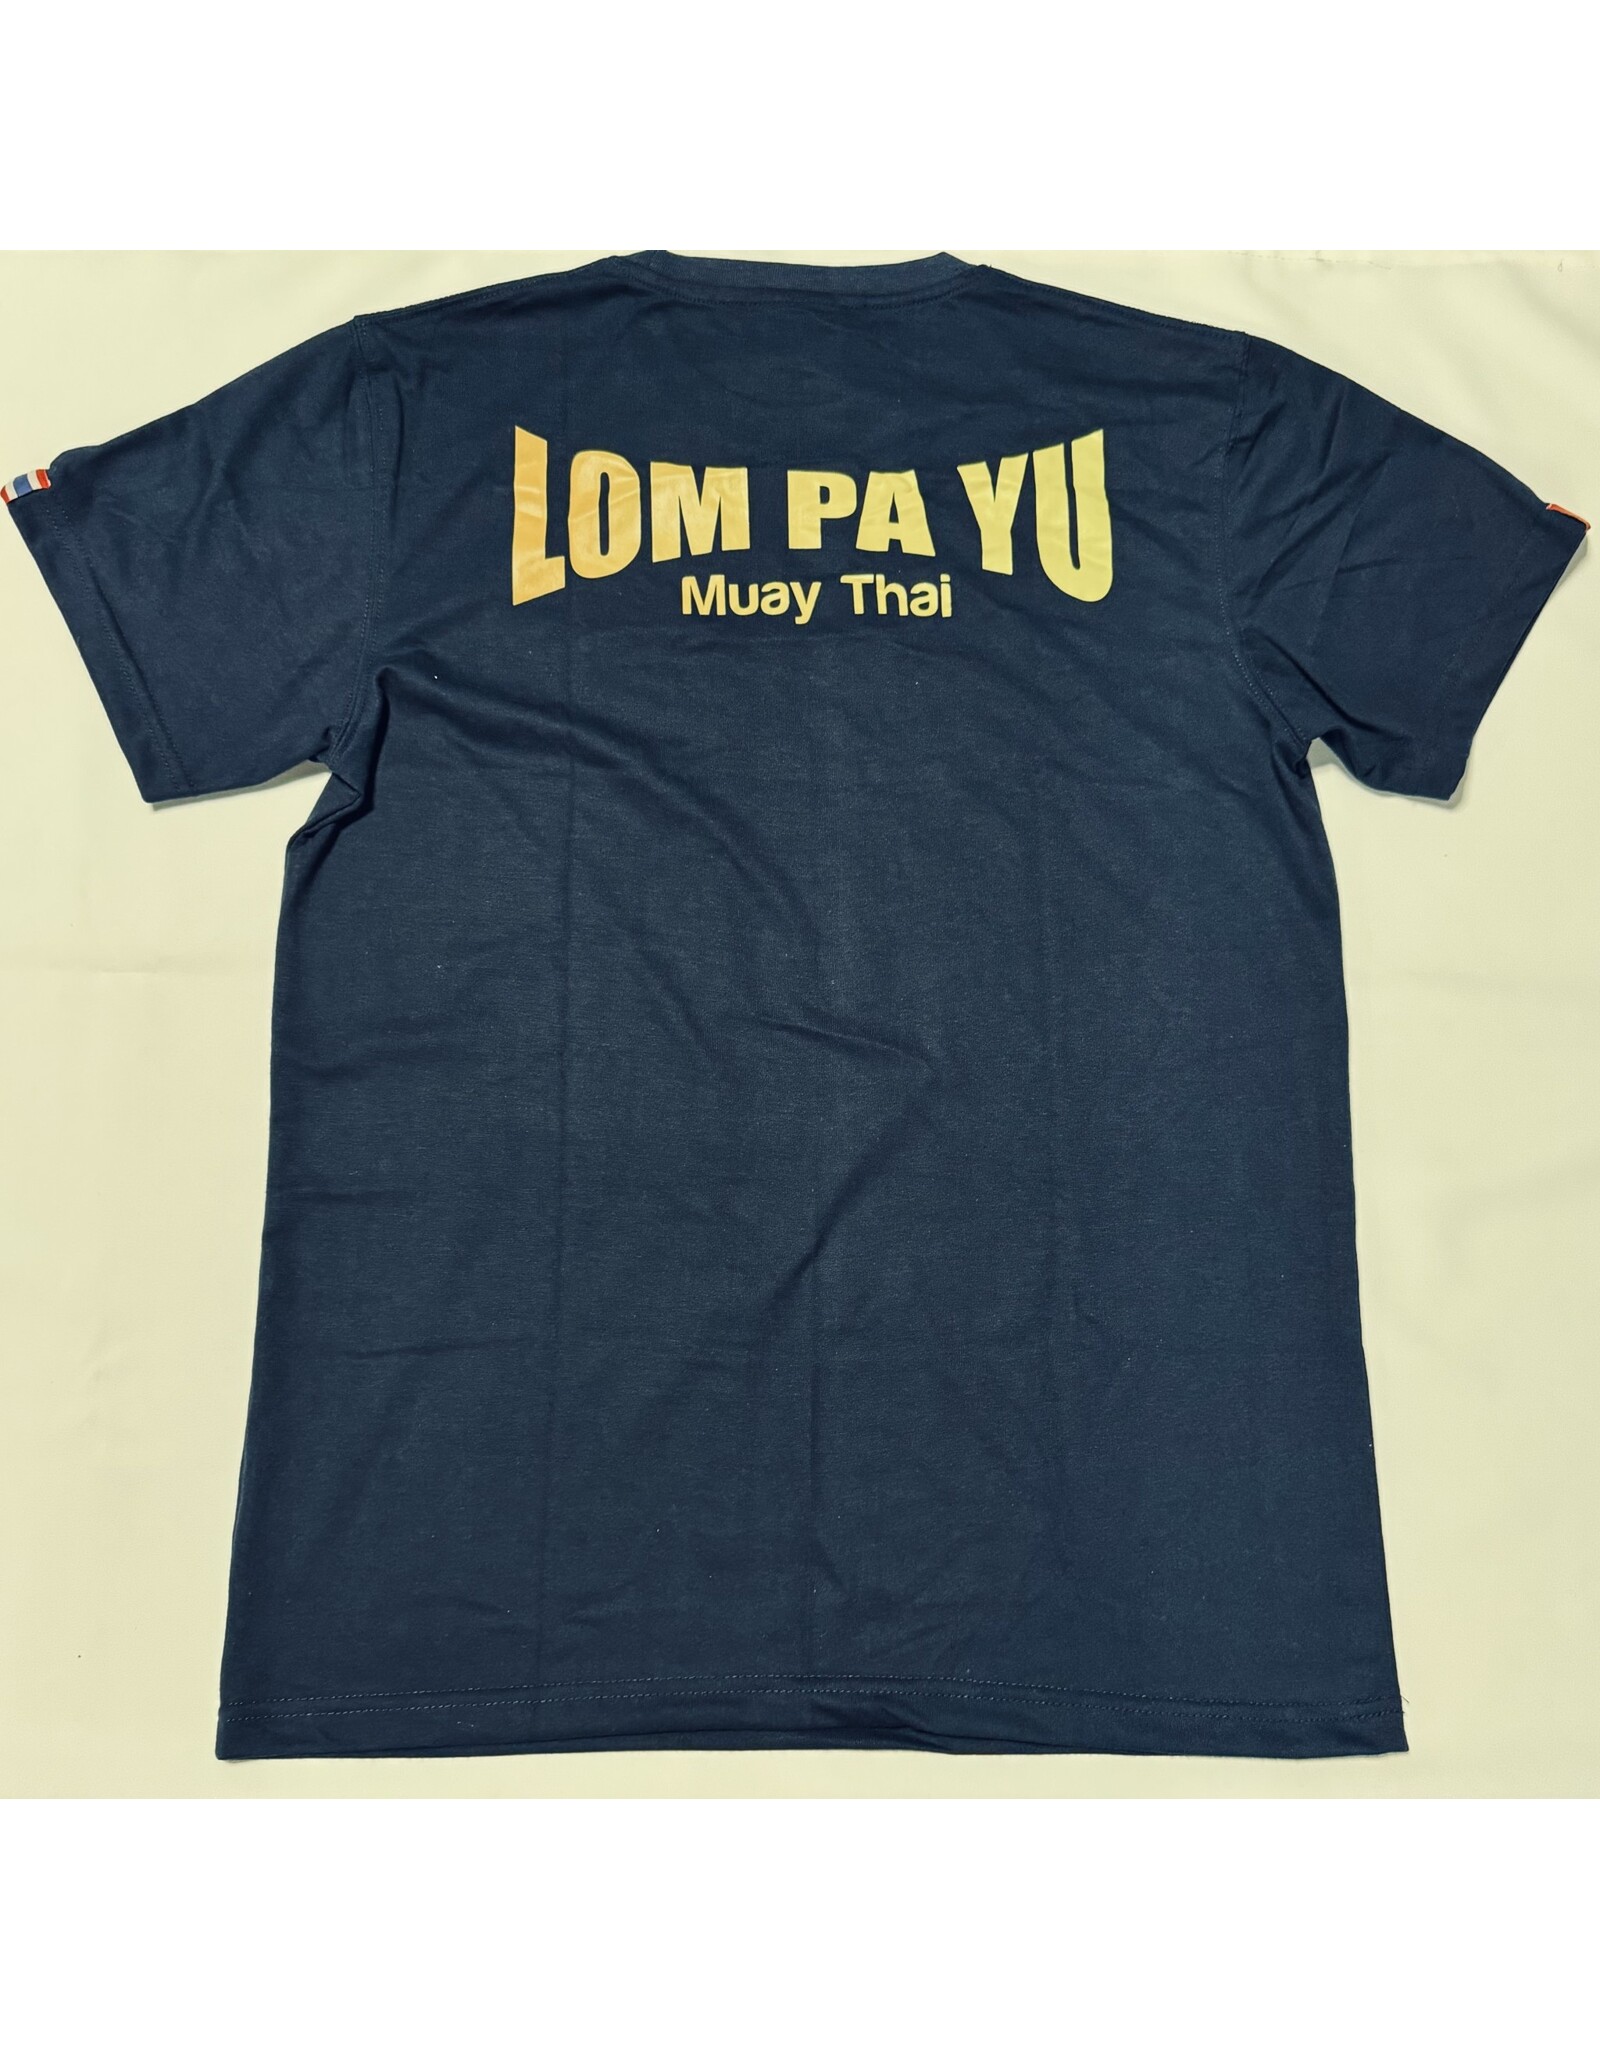 Lom Pa Yu Shirts Lom Pa Yu #Muay Thai